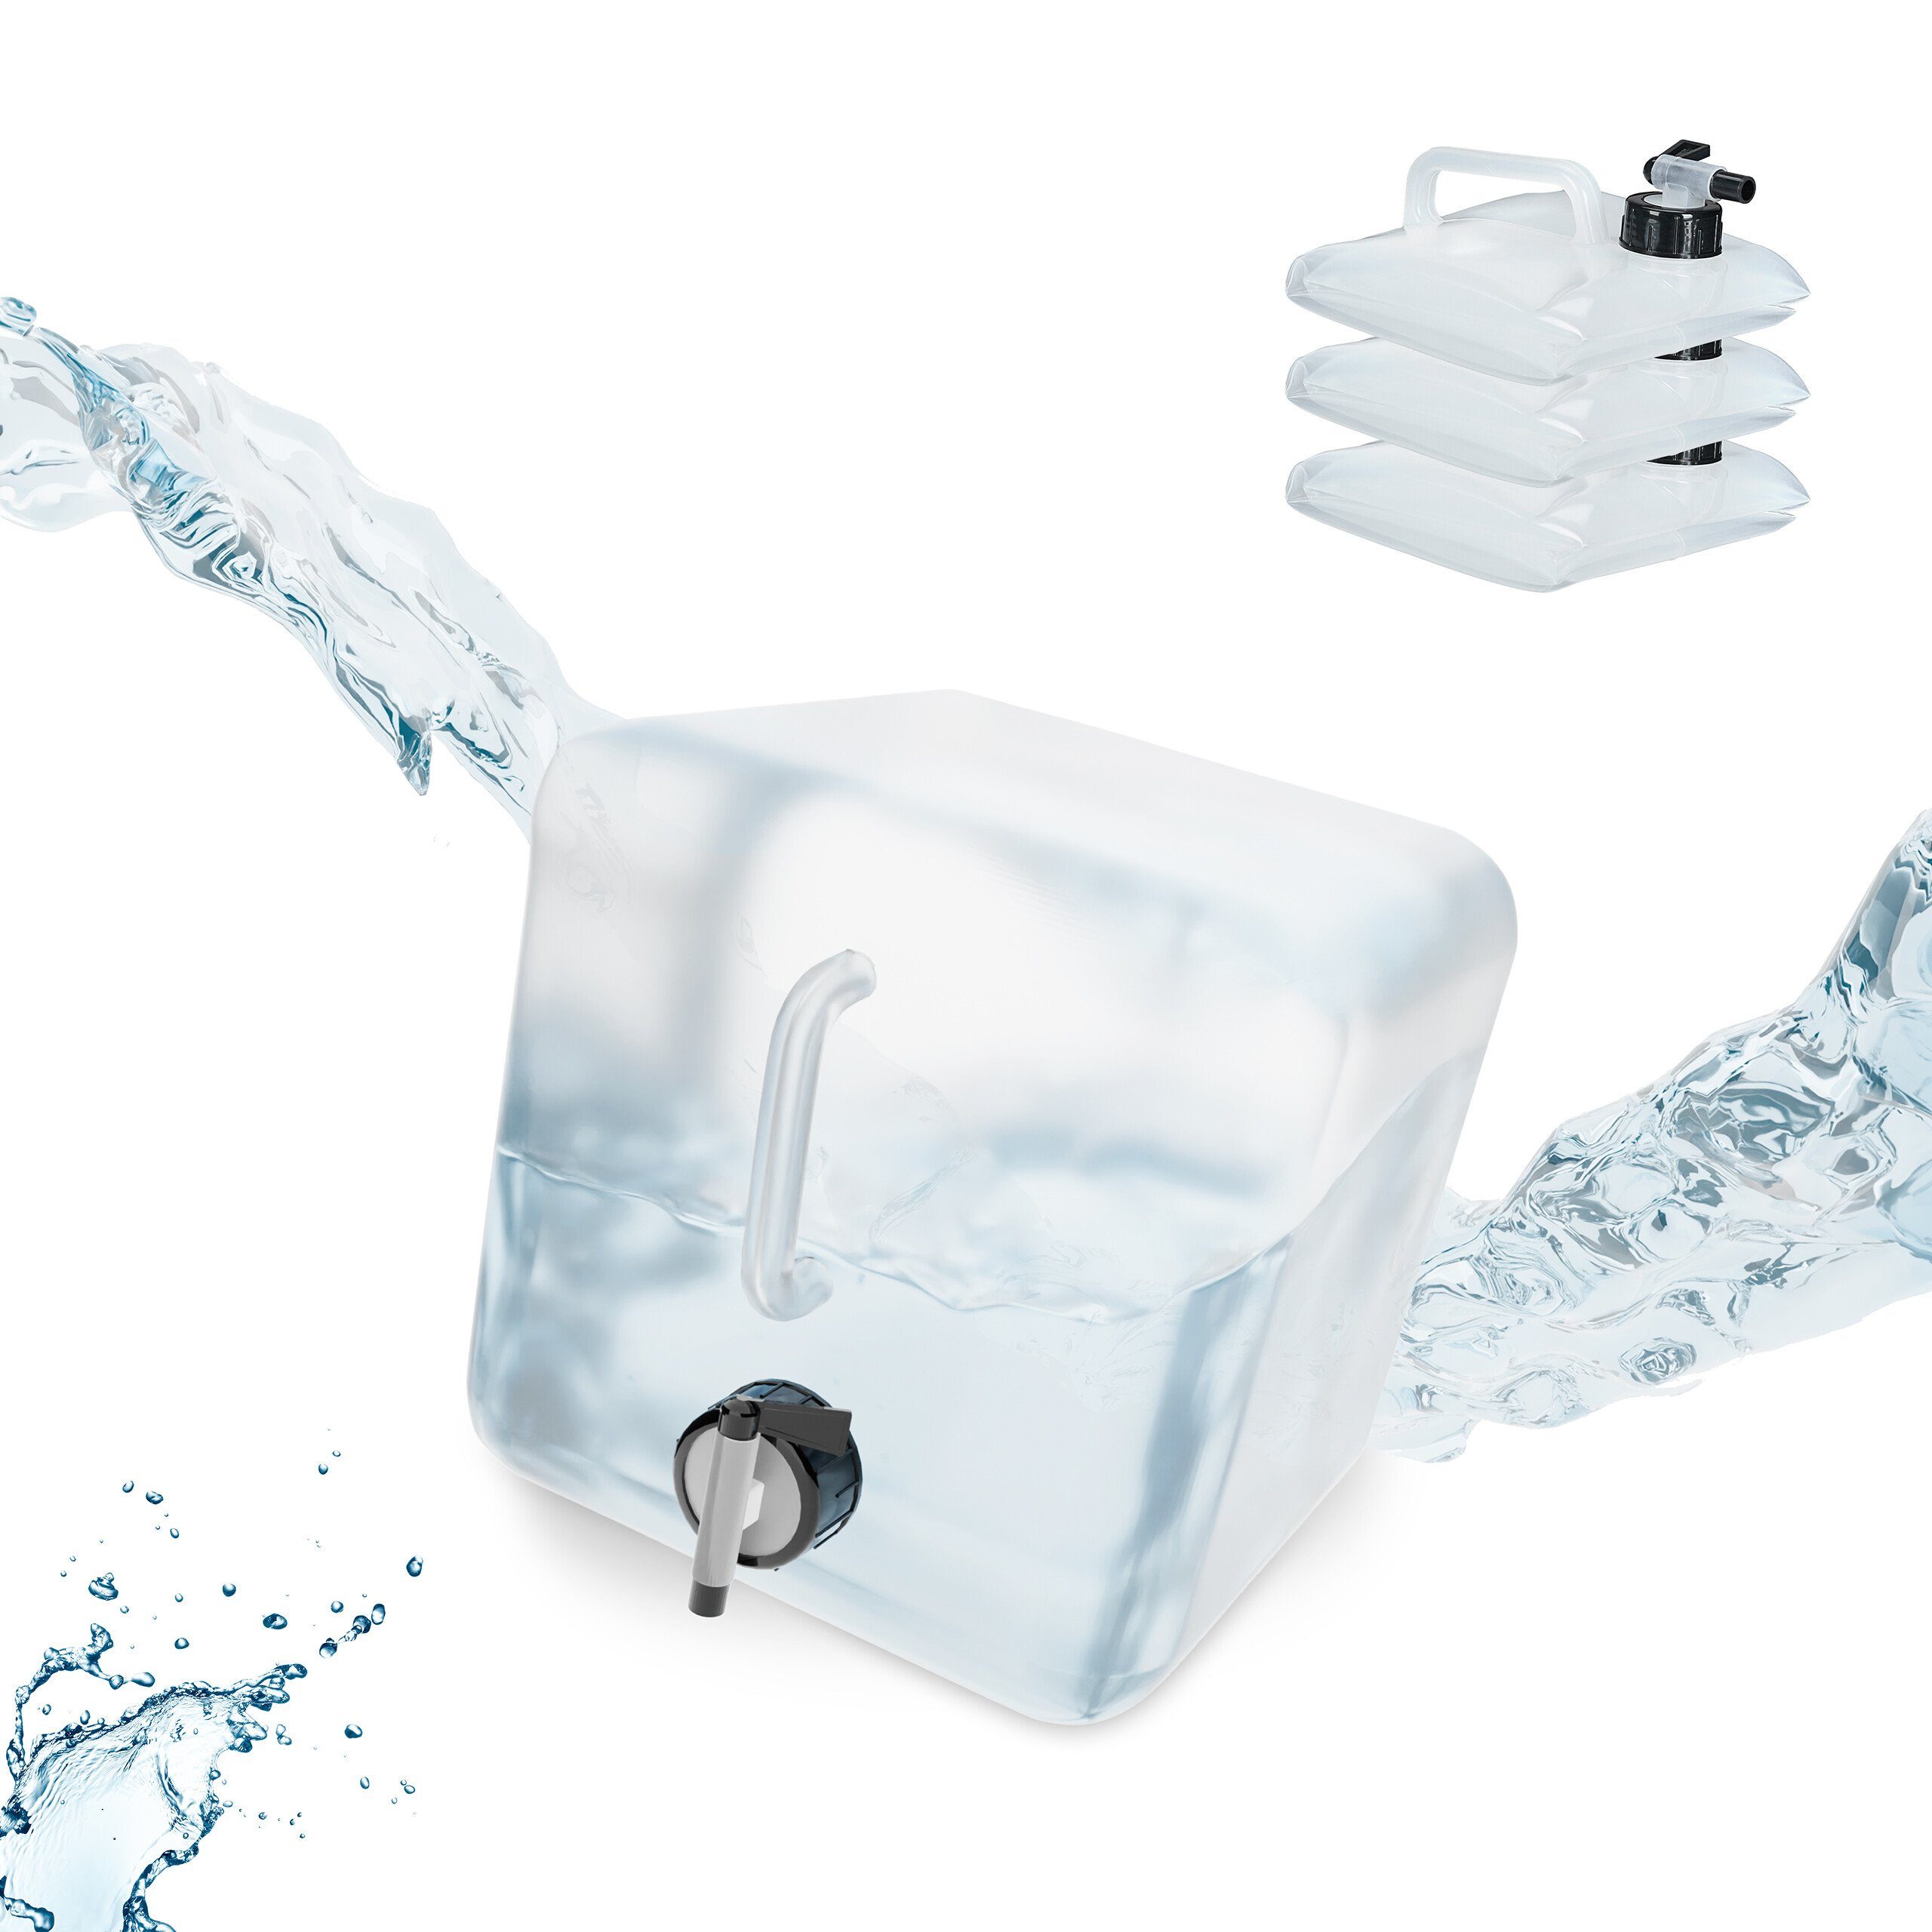 plasteo® 30 Liter Getränke- Wasserkanister Natur mit Schraubdeckel